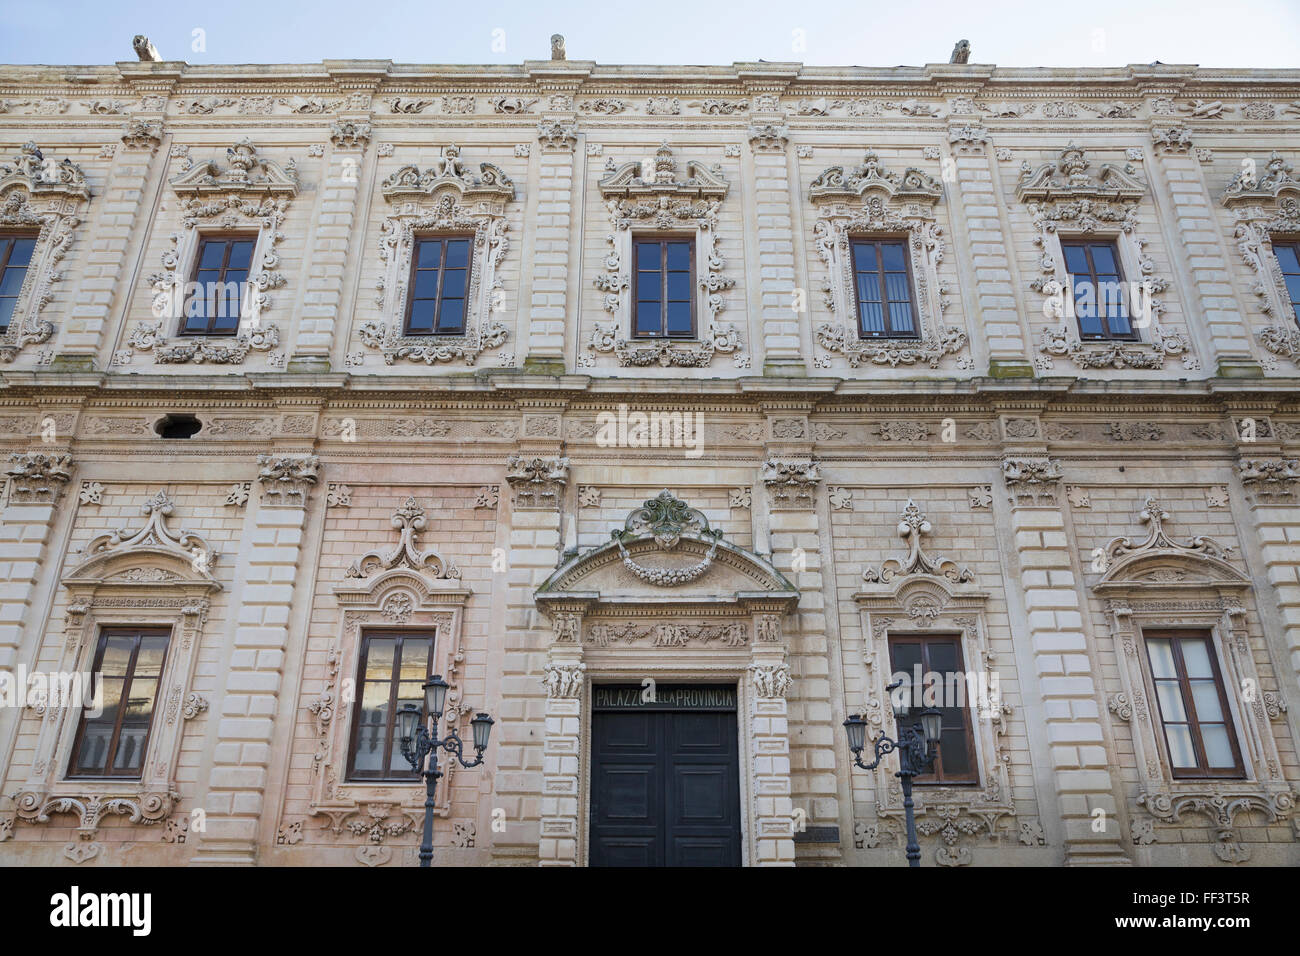 Palazzo dei Celestini, Lecce, Puglia, Italy Stock Photo - Alamy